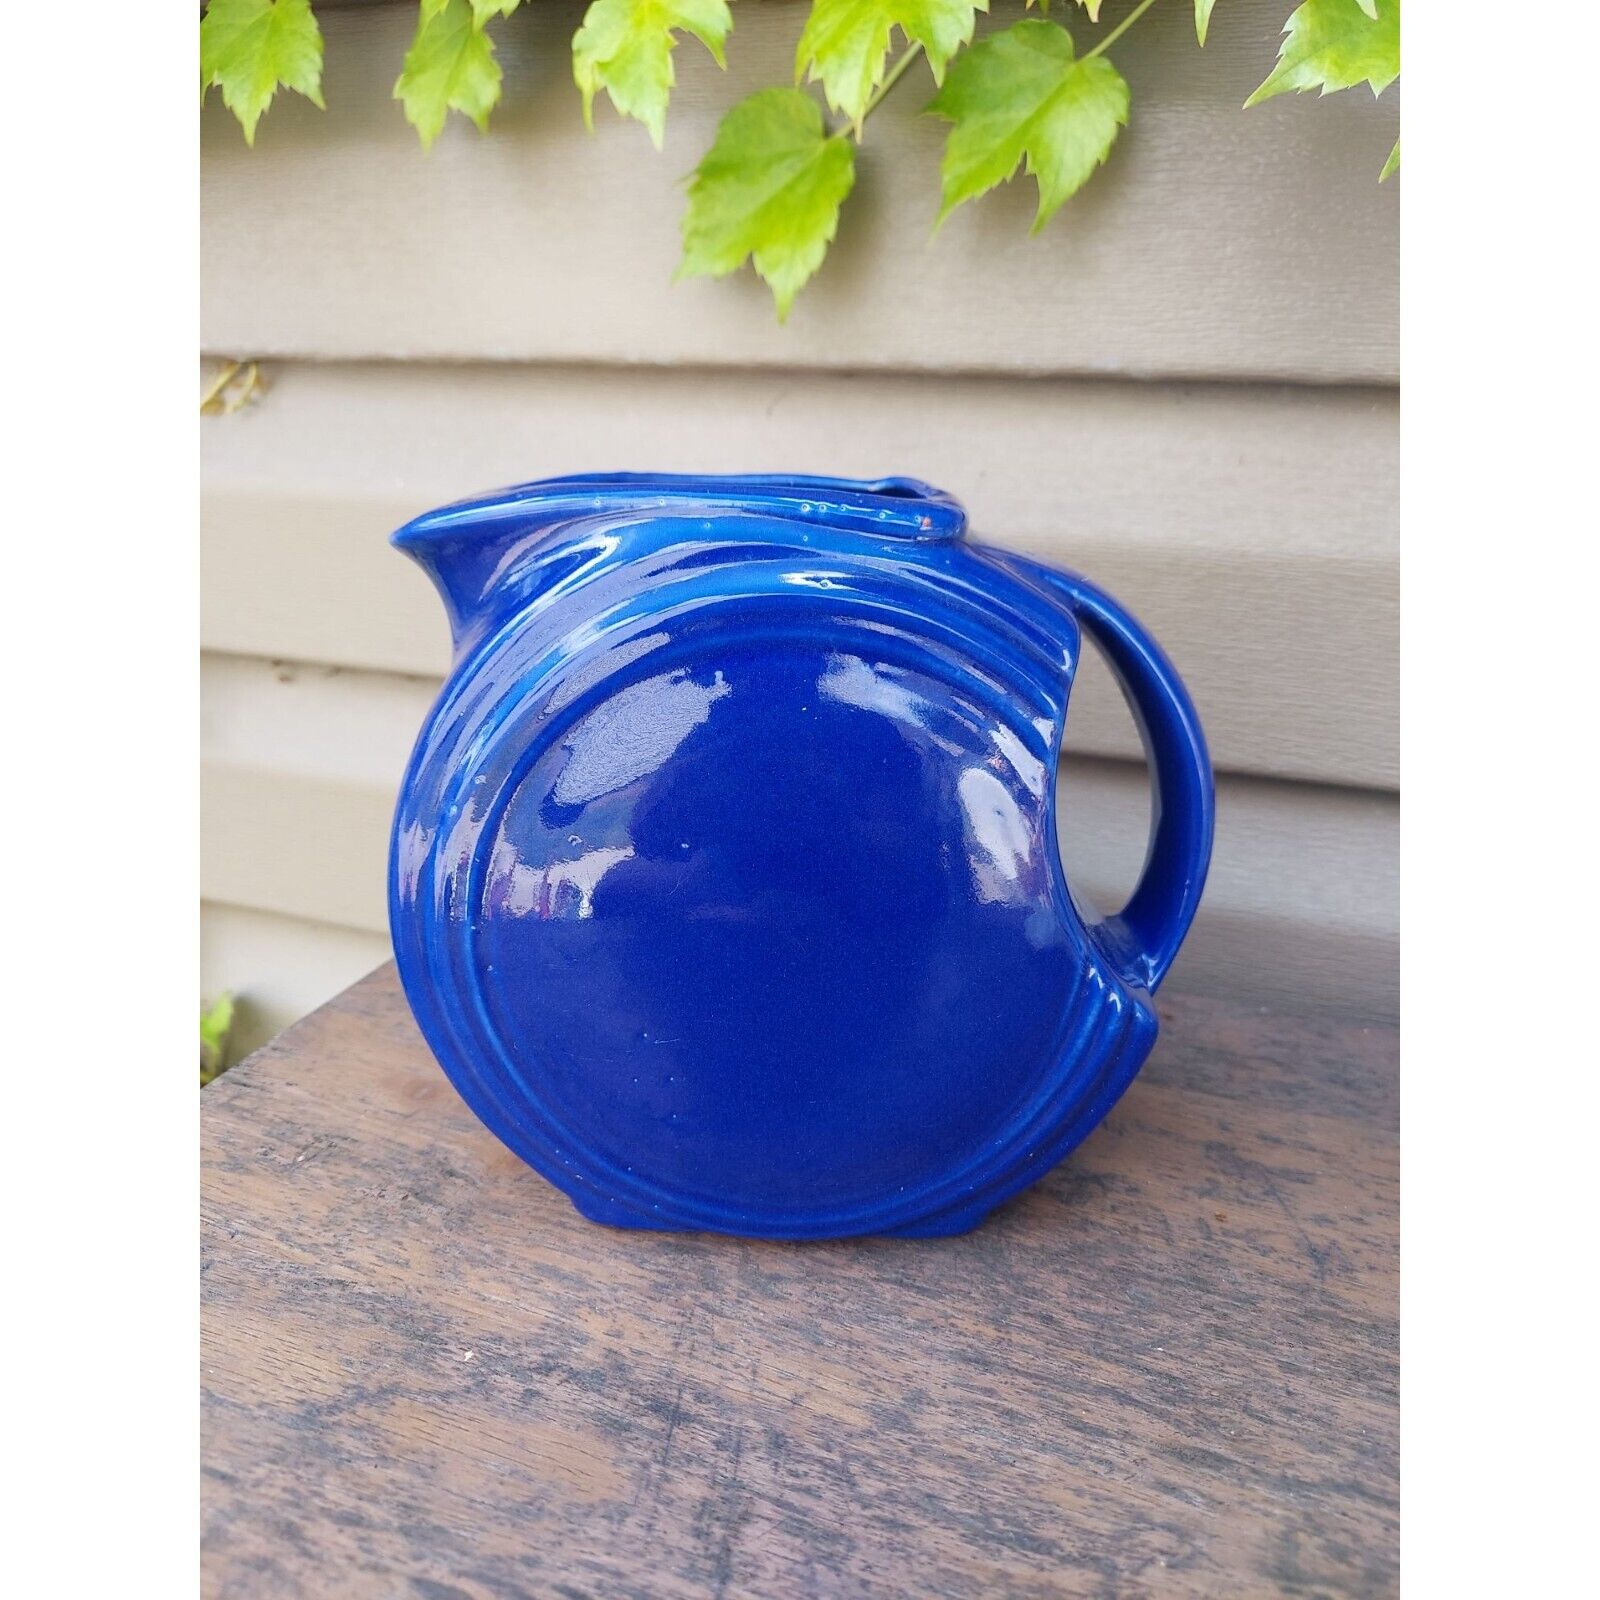 Vintage Cobalt Blue Ceramic Pitcher Art Deco Disc Style 1940s